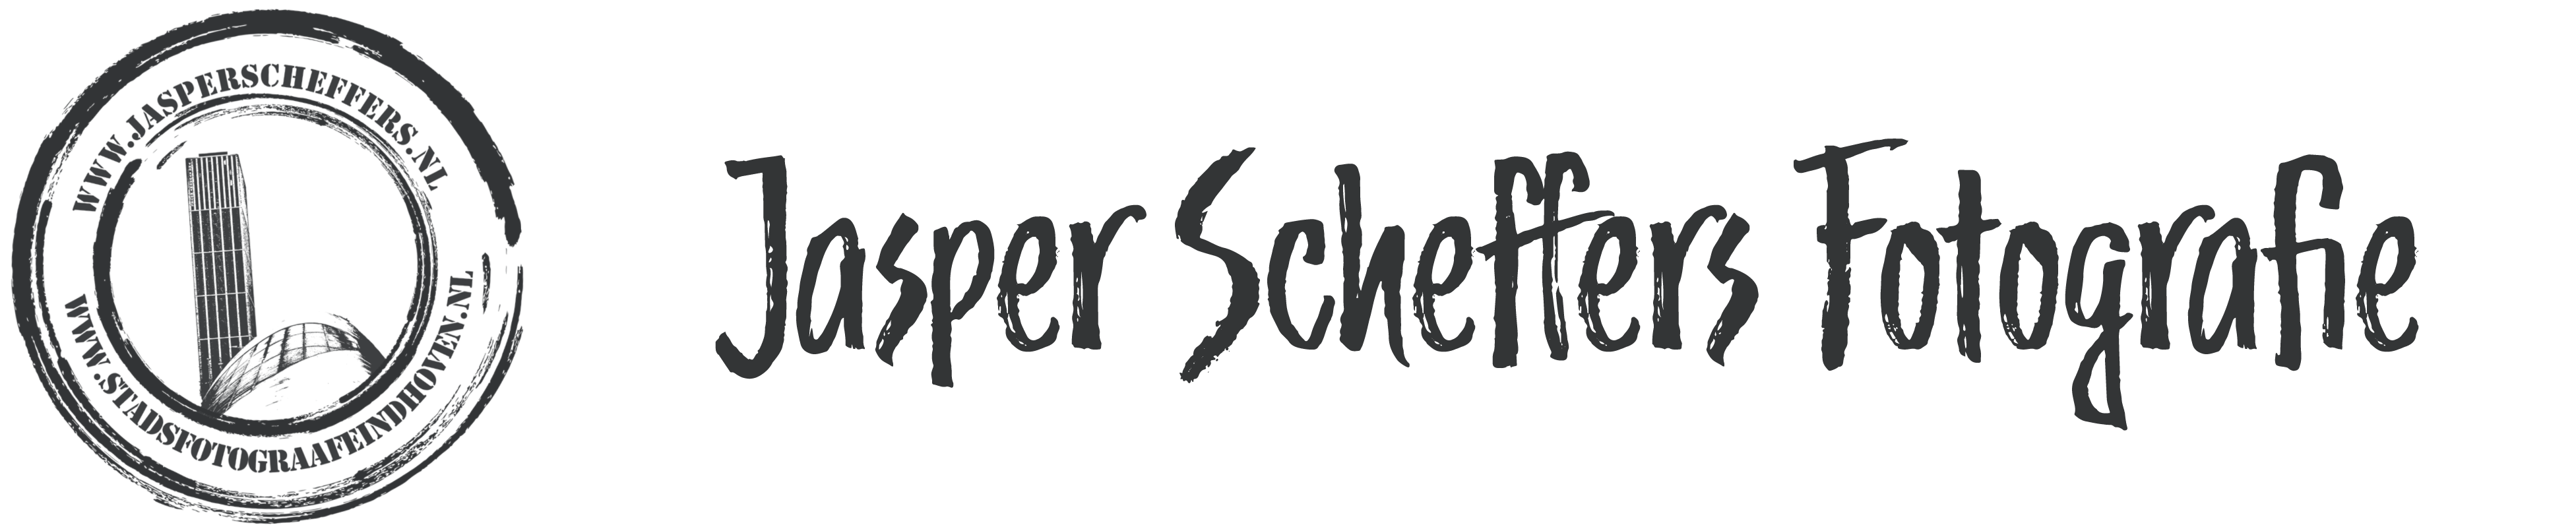 Jasper Scheffers